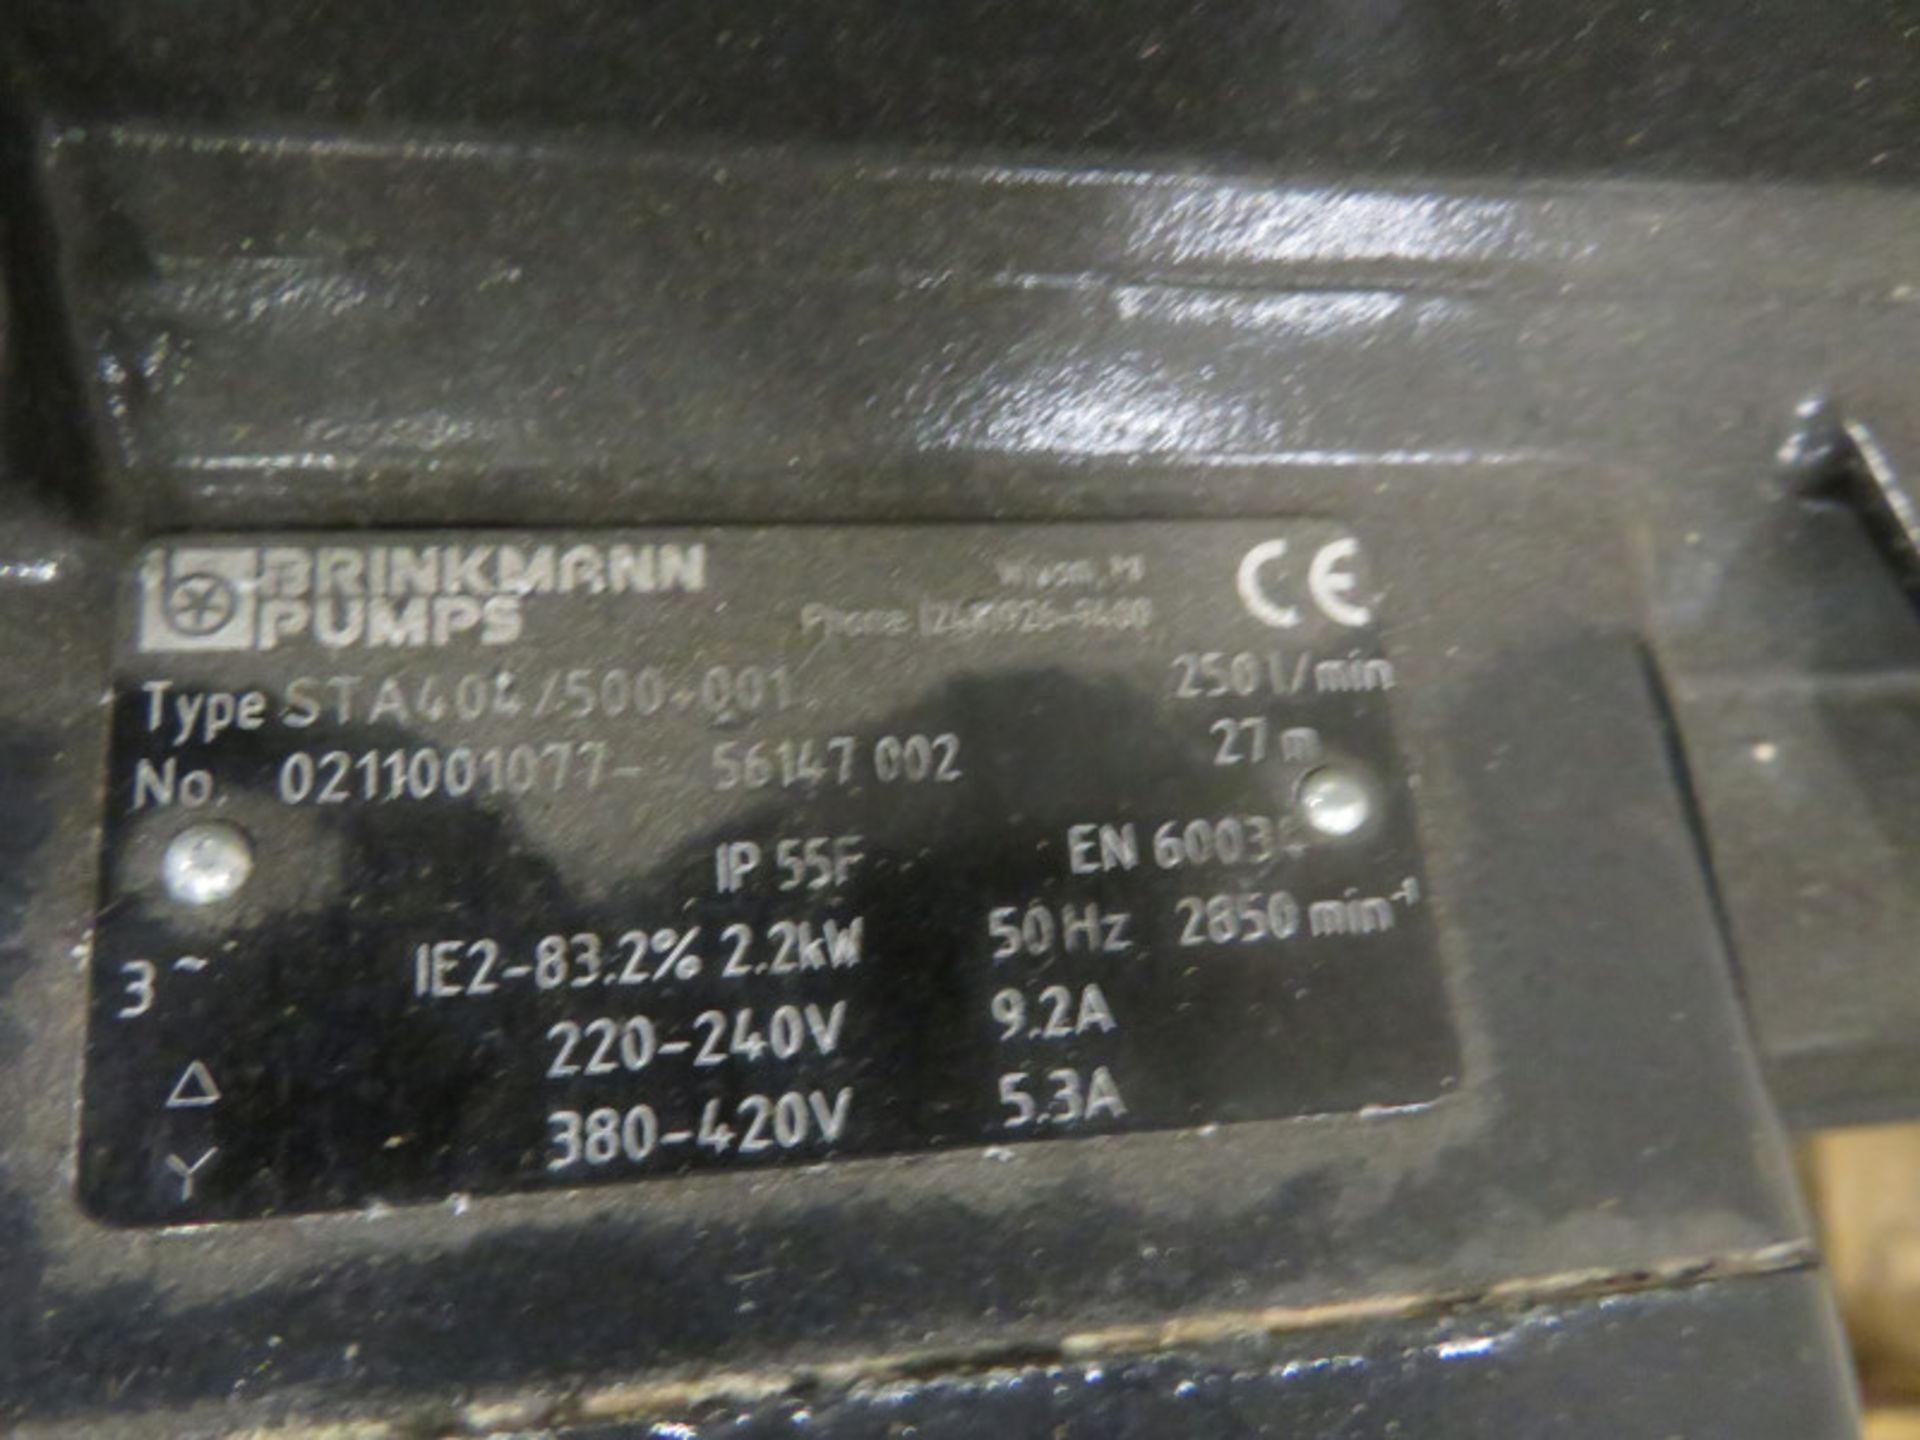 Brinkmann pumps STA404/500-001 - 250l/min - Image 3 of 3